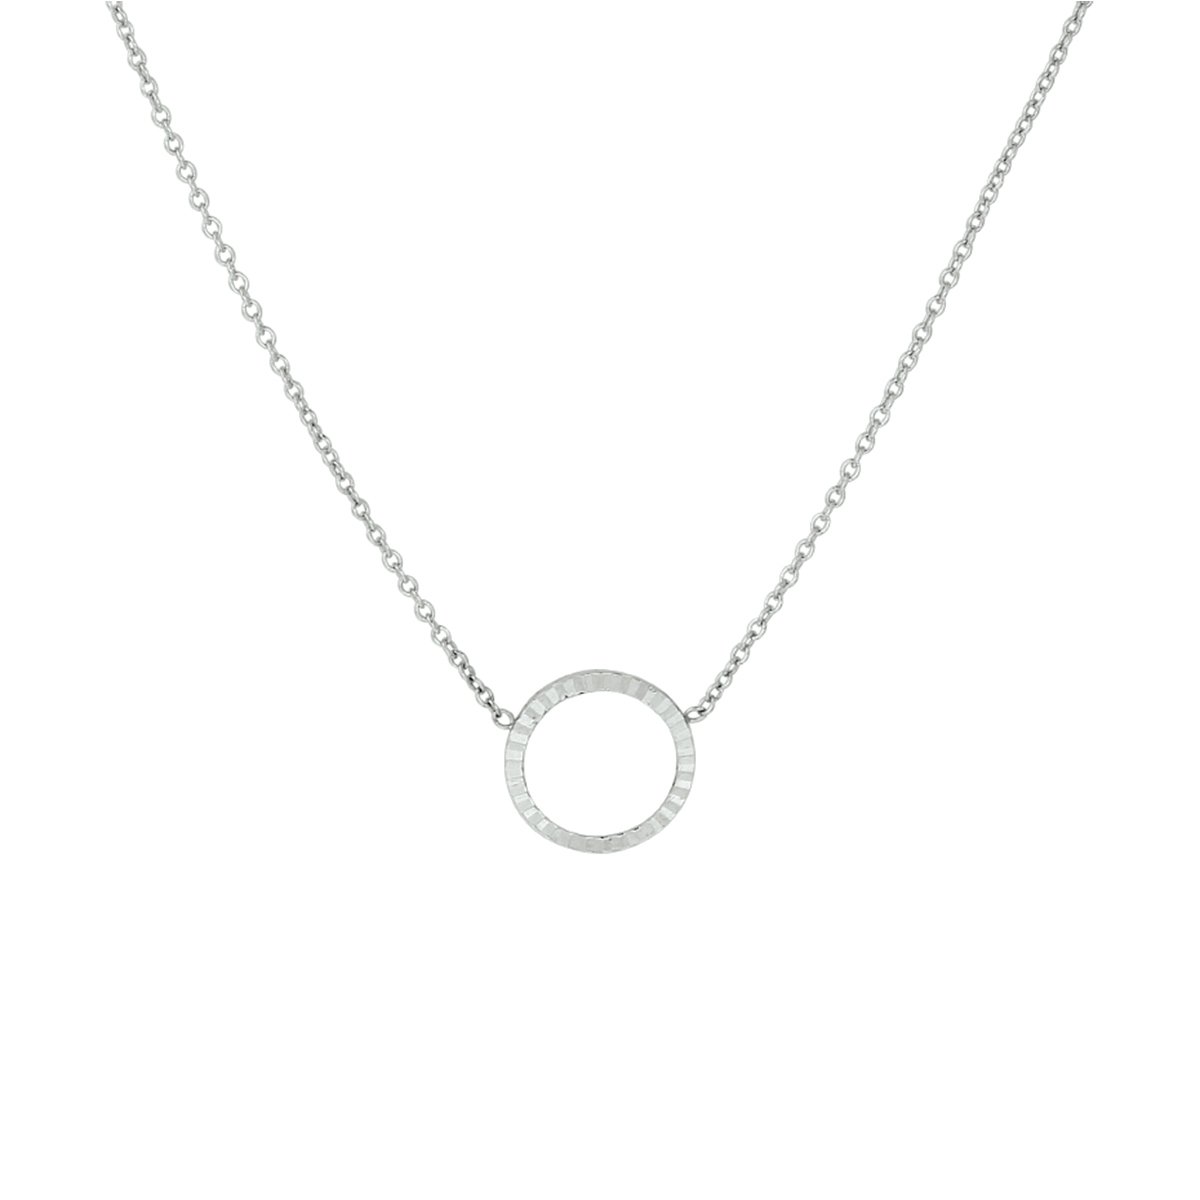 Gerhodineerd zilveren ketting met open rondje hanger